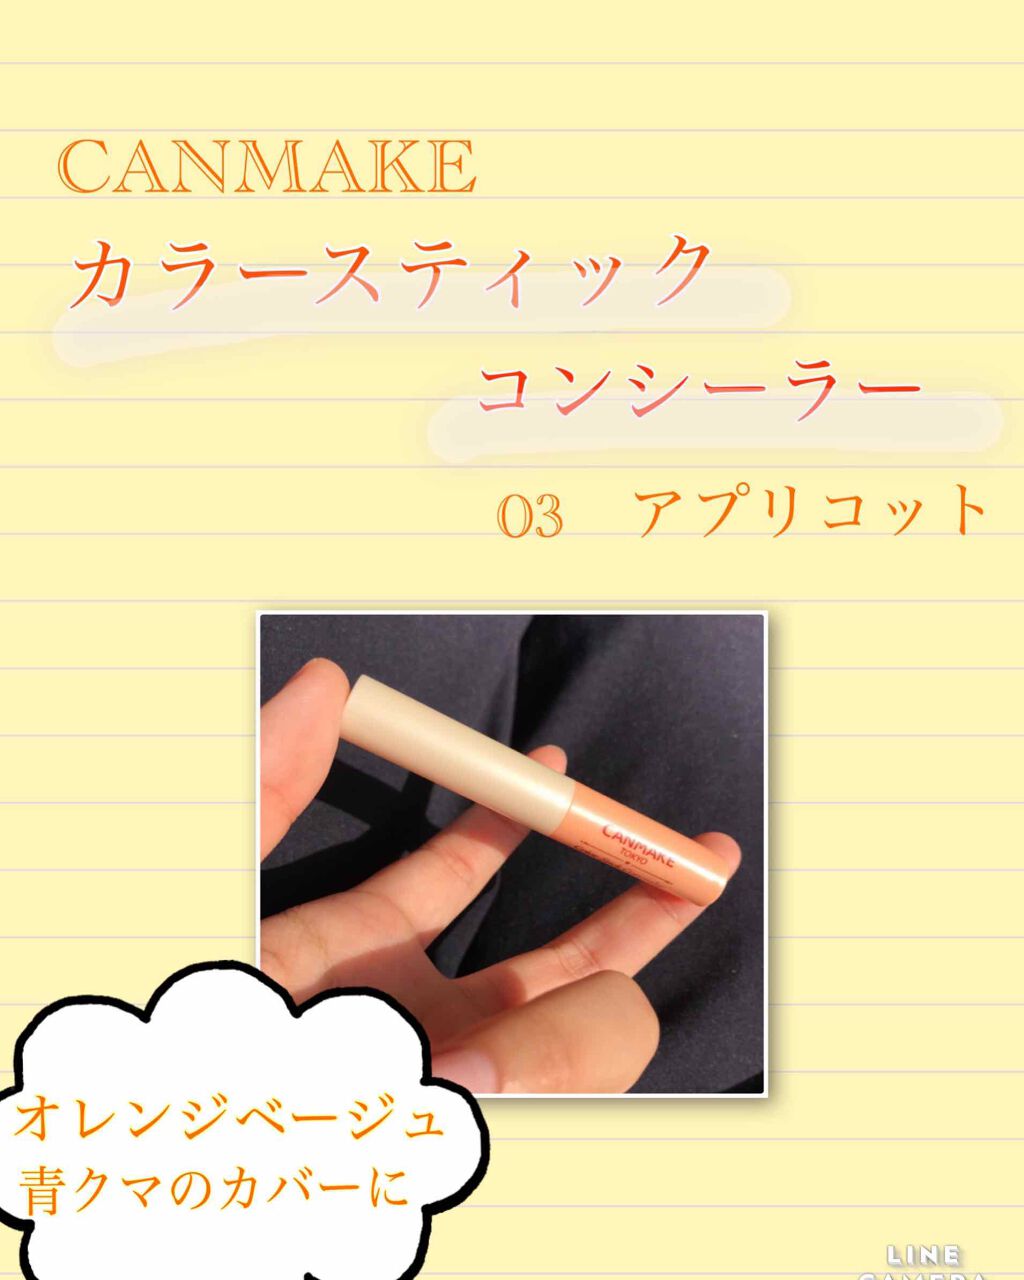 CANMAKE キャンメイク カラースティック コンシーラー 03 アプリコット 井田ラボラトリーズ SALE開催中